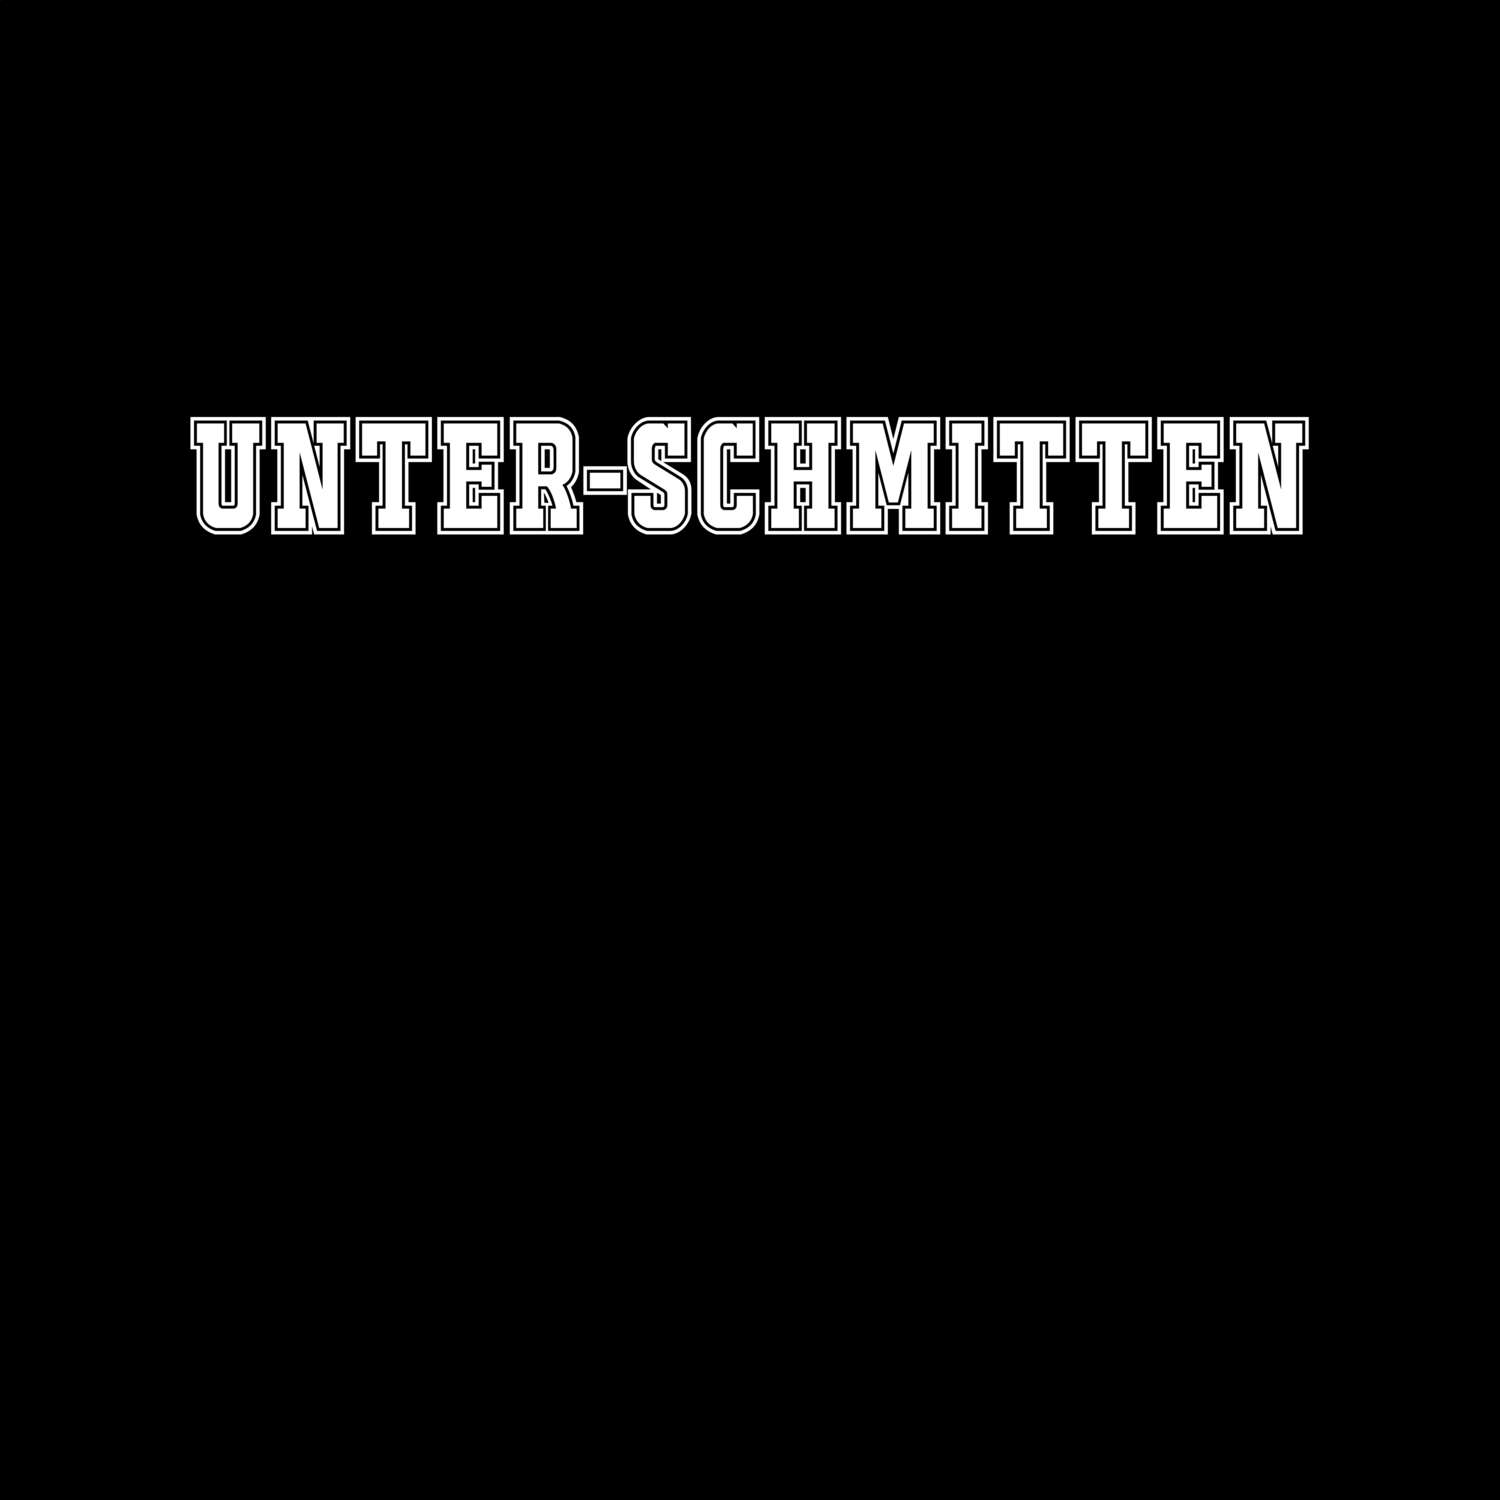 Unter-Schmitten T-Shirt »Classic«